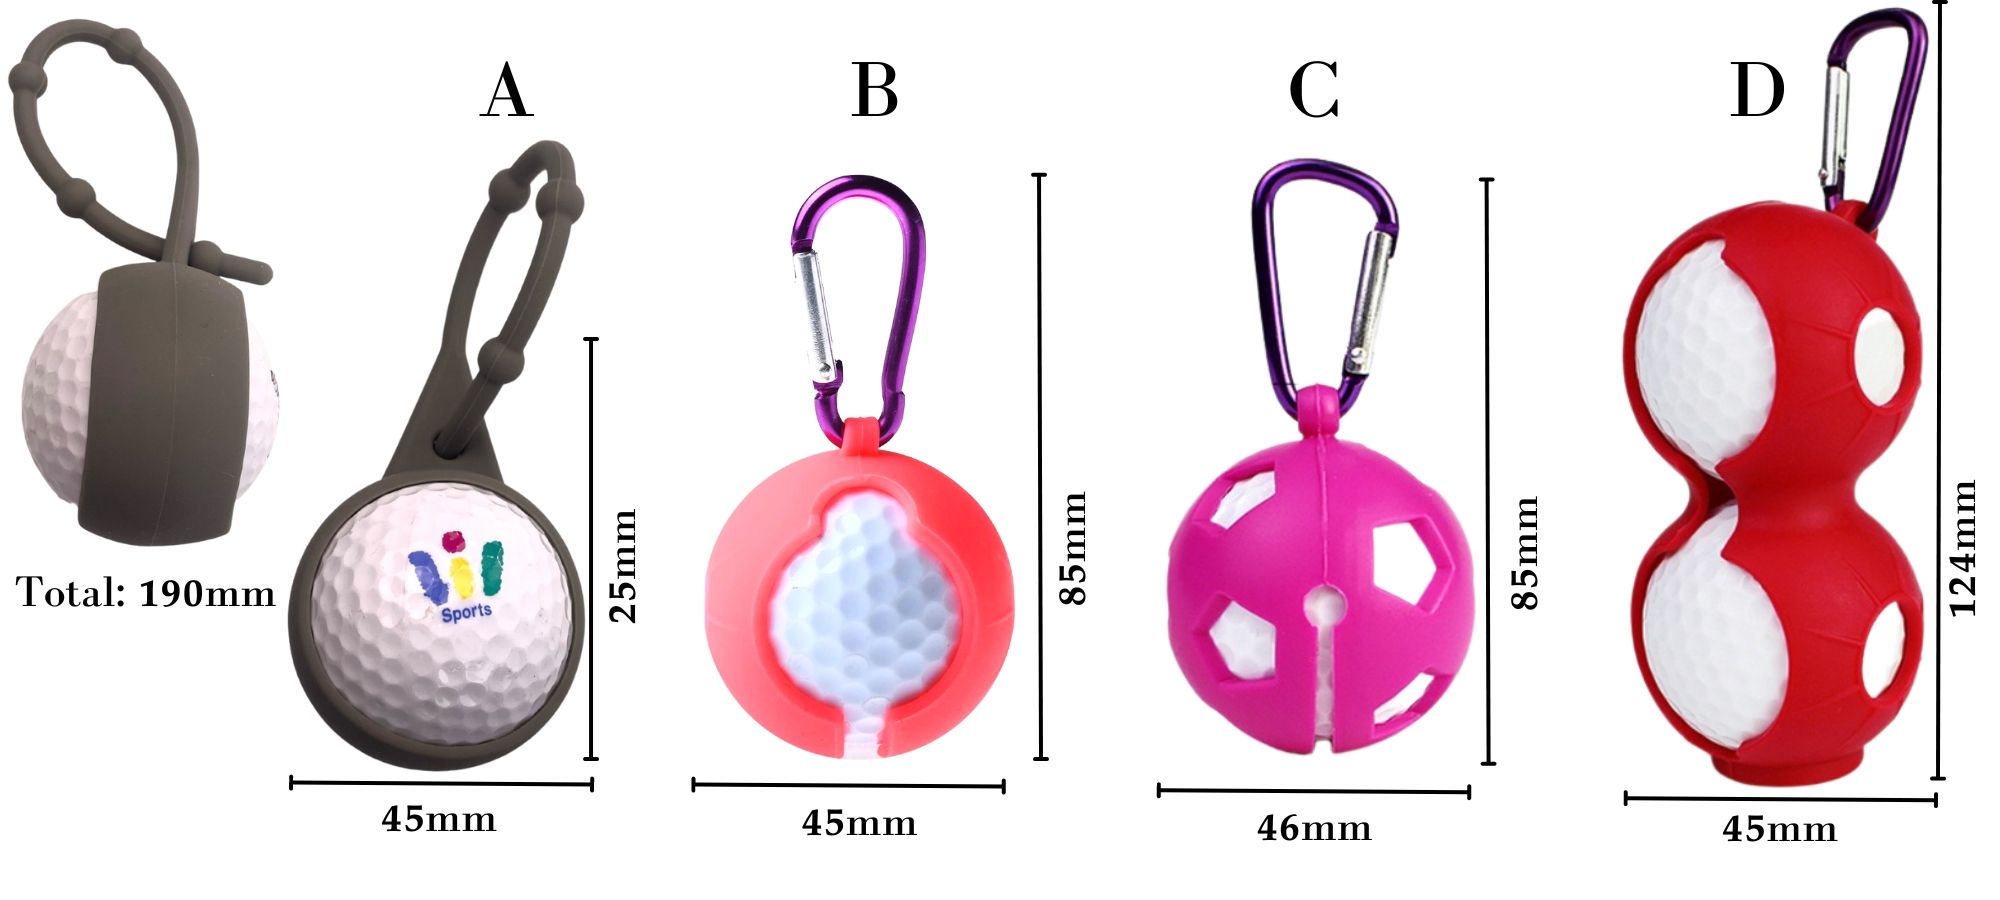 Les accessoires de golf en silicone.